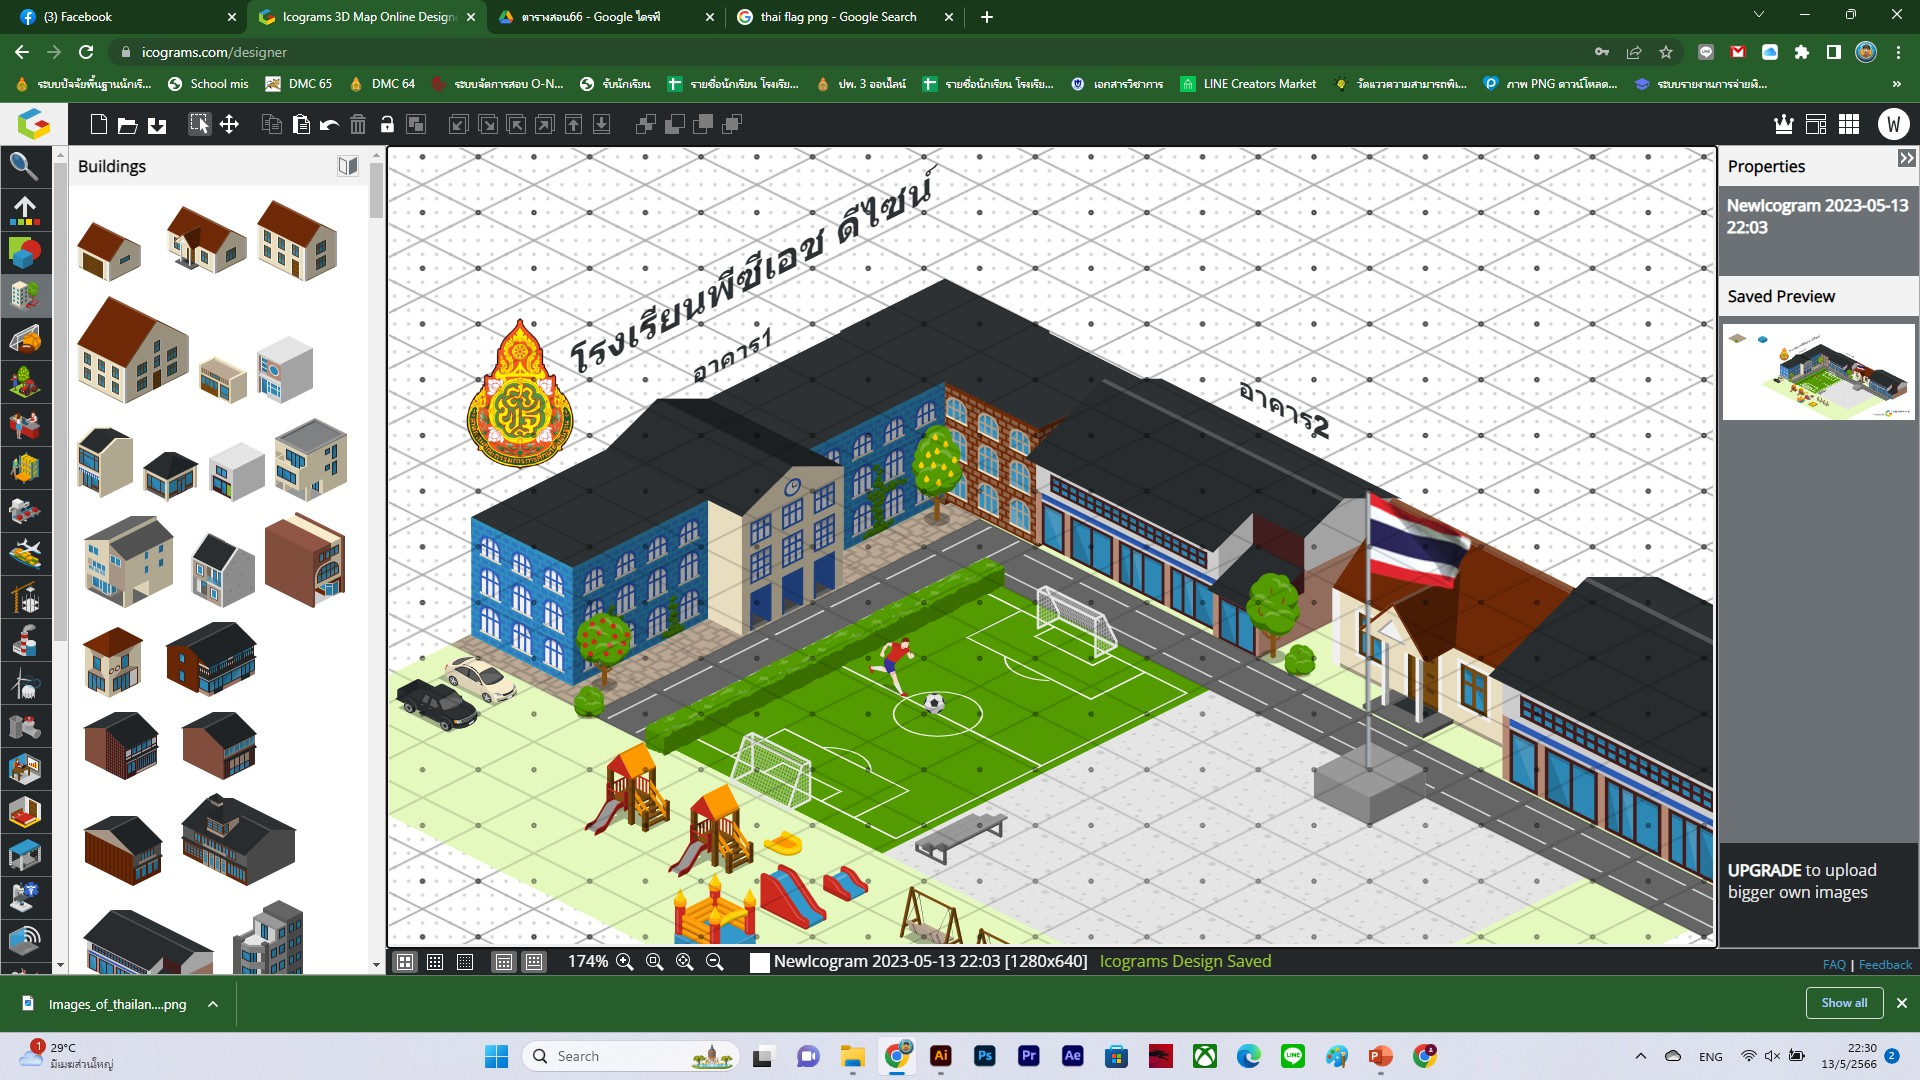 แนะนำเว็บไซต์ทำแผนผังโรงเรียน แผนผังอาคาร 3มิติ ใช้งานได้ฟรีๆ icograms.com